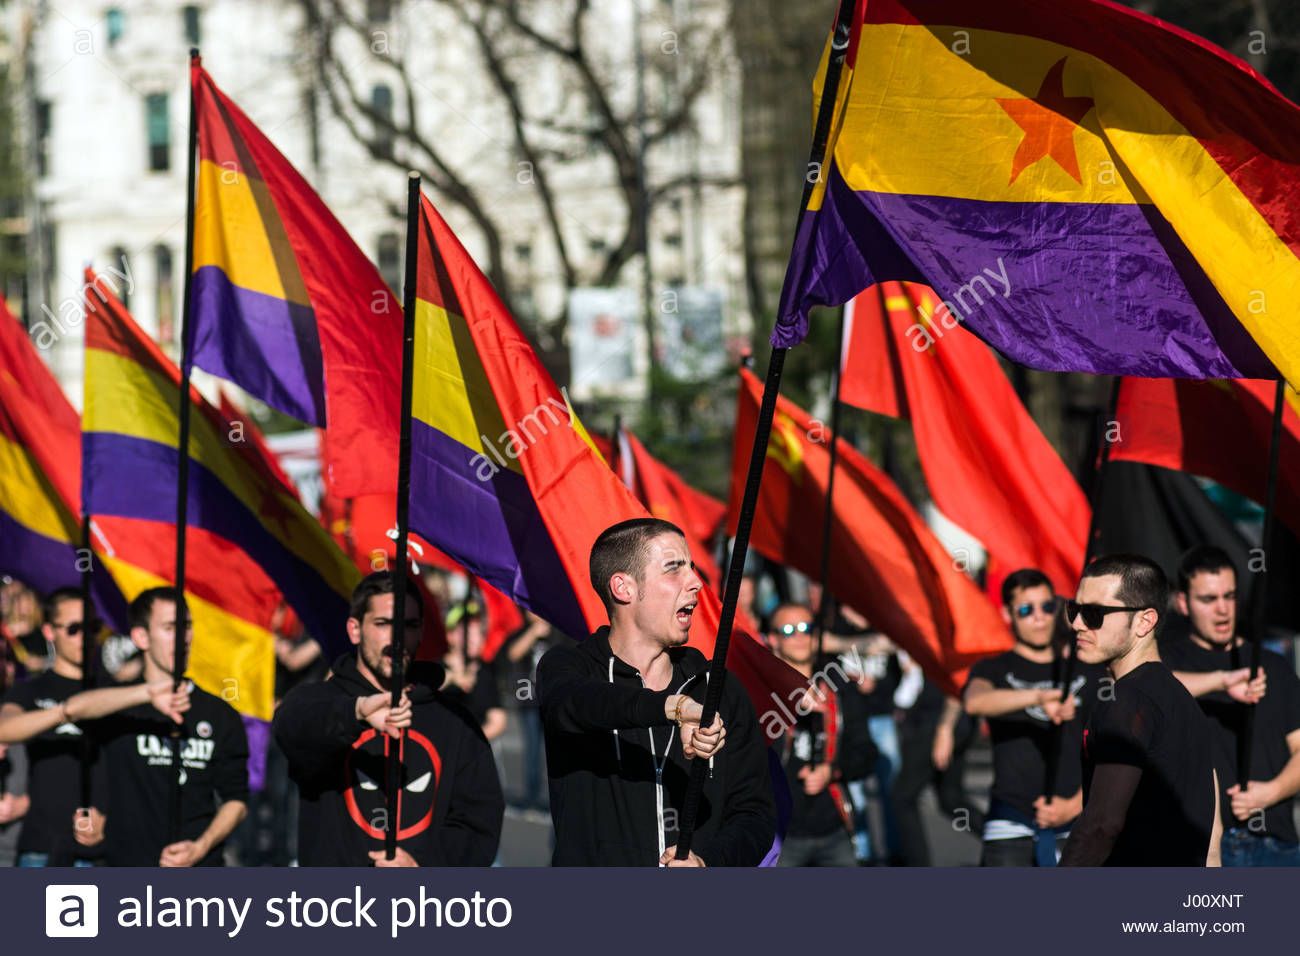 madrid-espana-8-abr-2017-personas-que-ondeaban-banderas-republicanas-y-comunistas-durante-una-...jpg